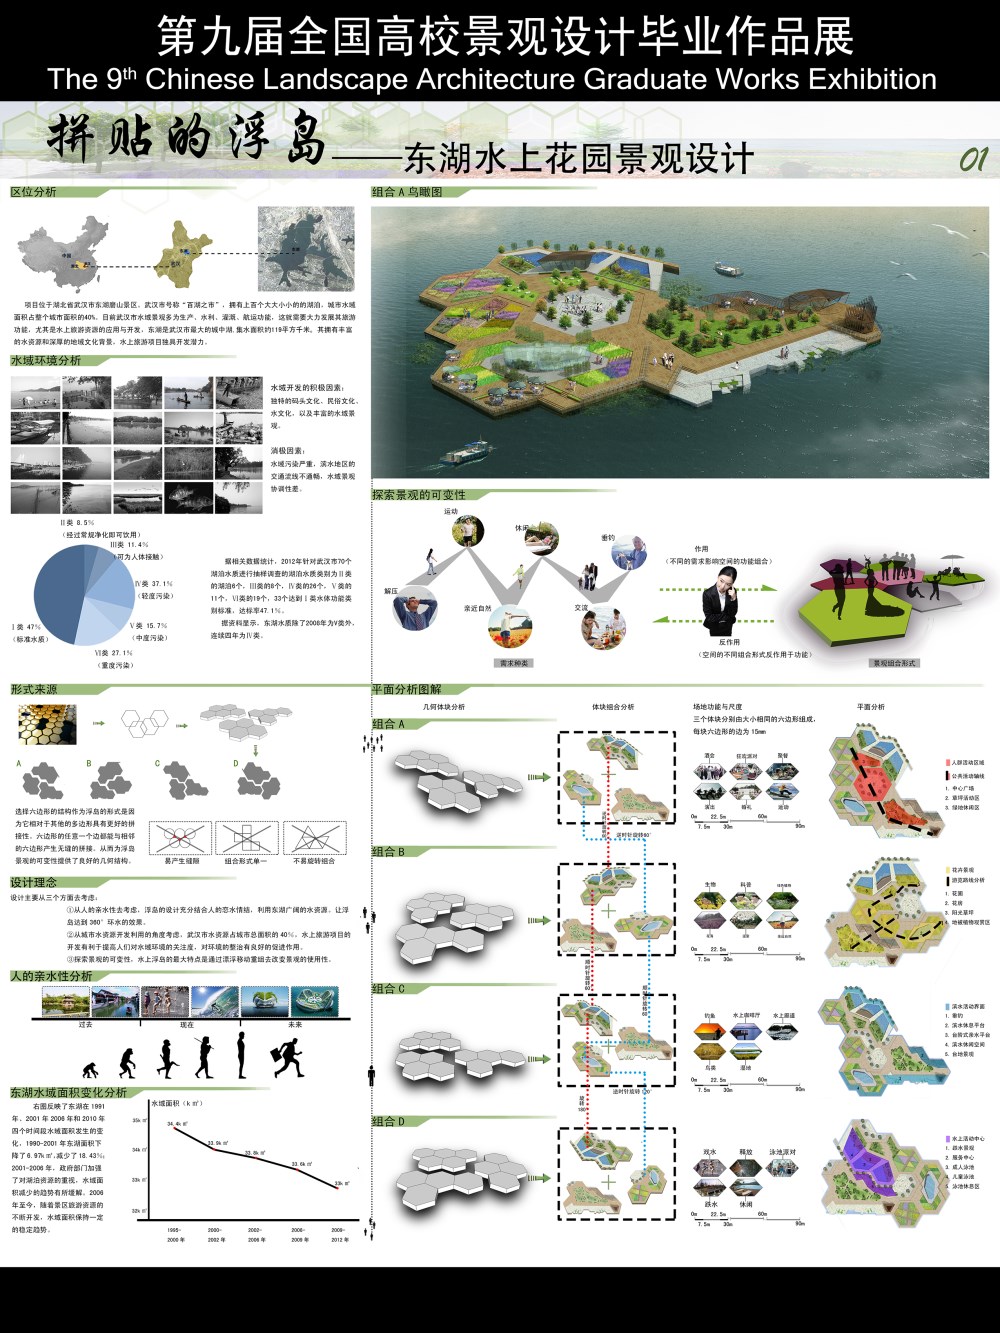 拼贴的浮岛——东湖水上花园景观设计-1